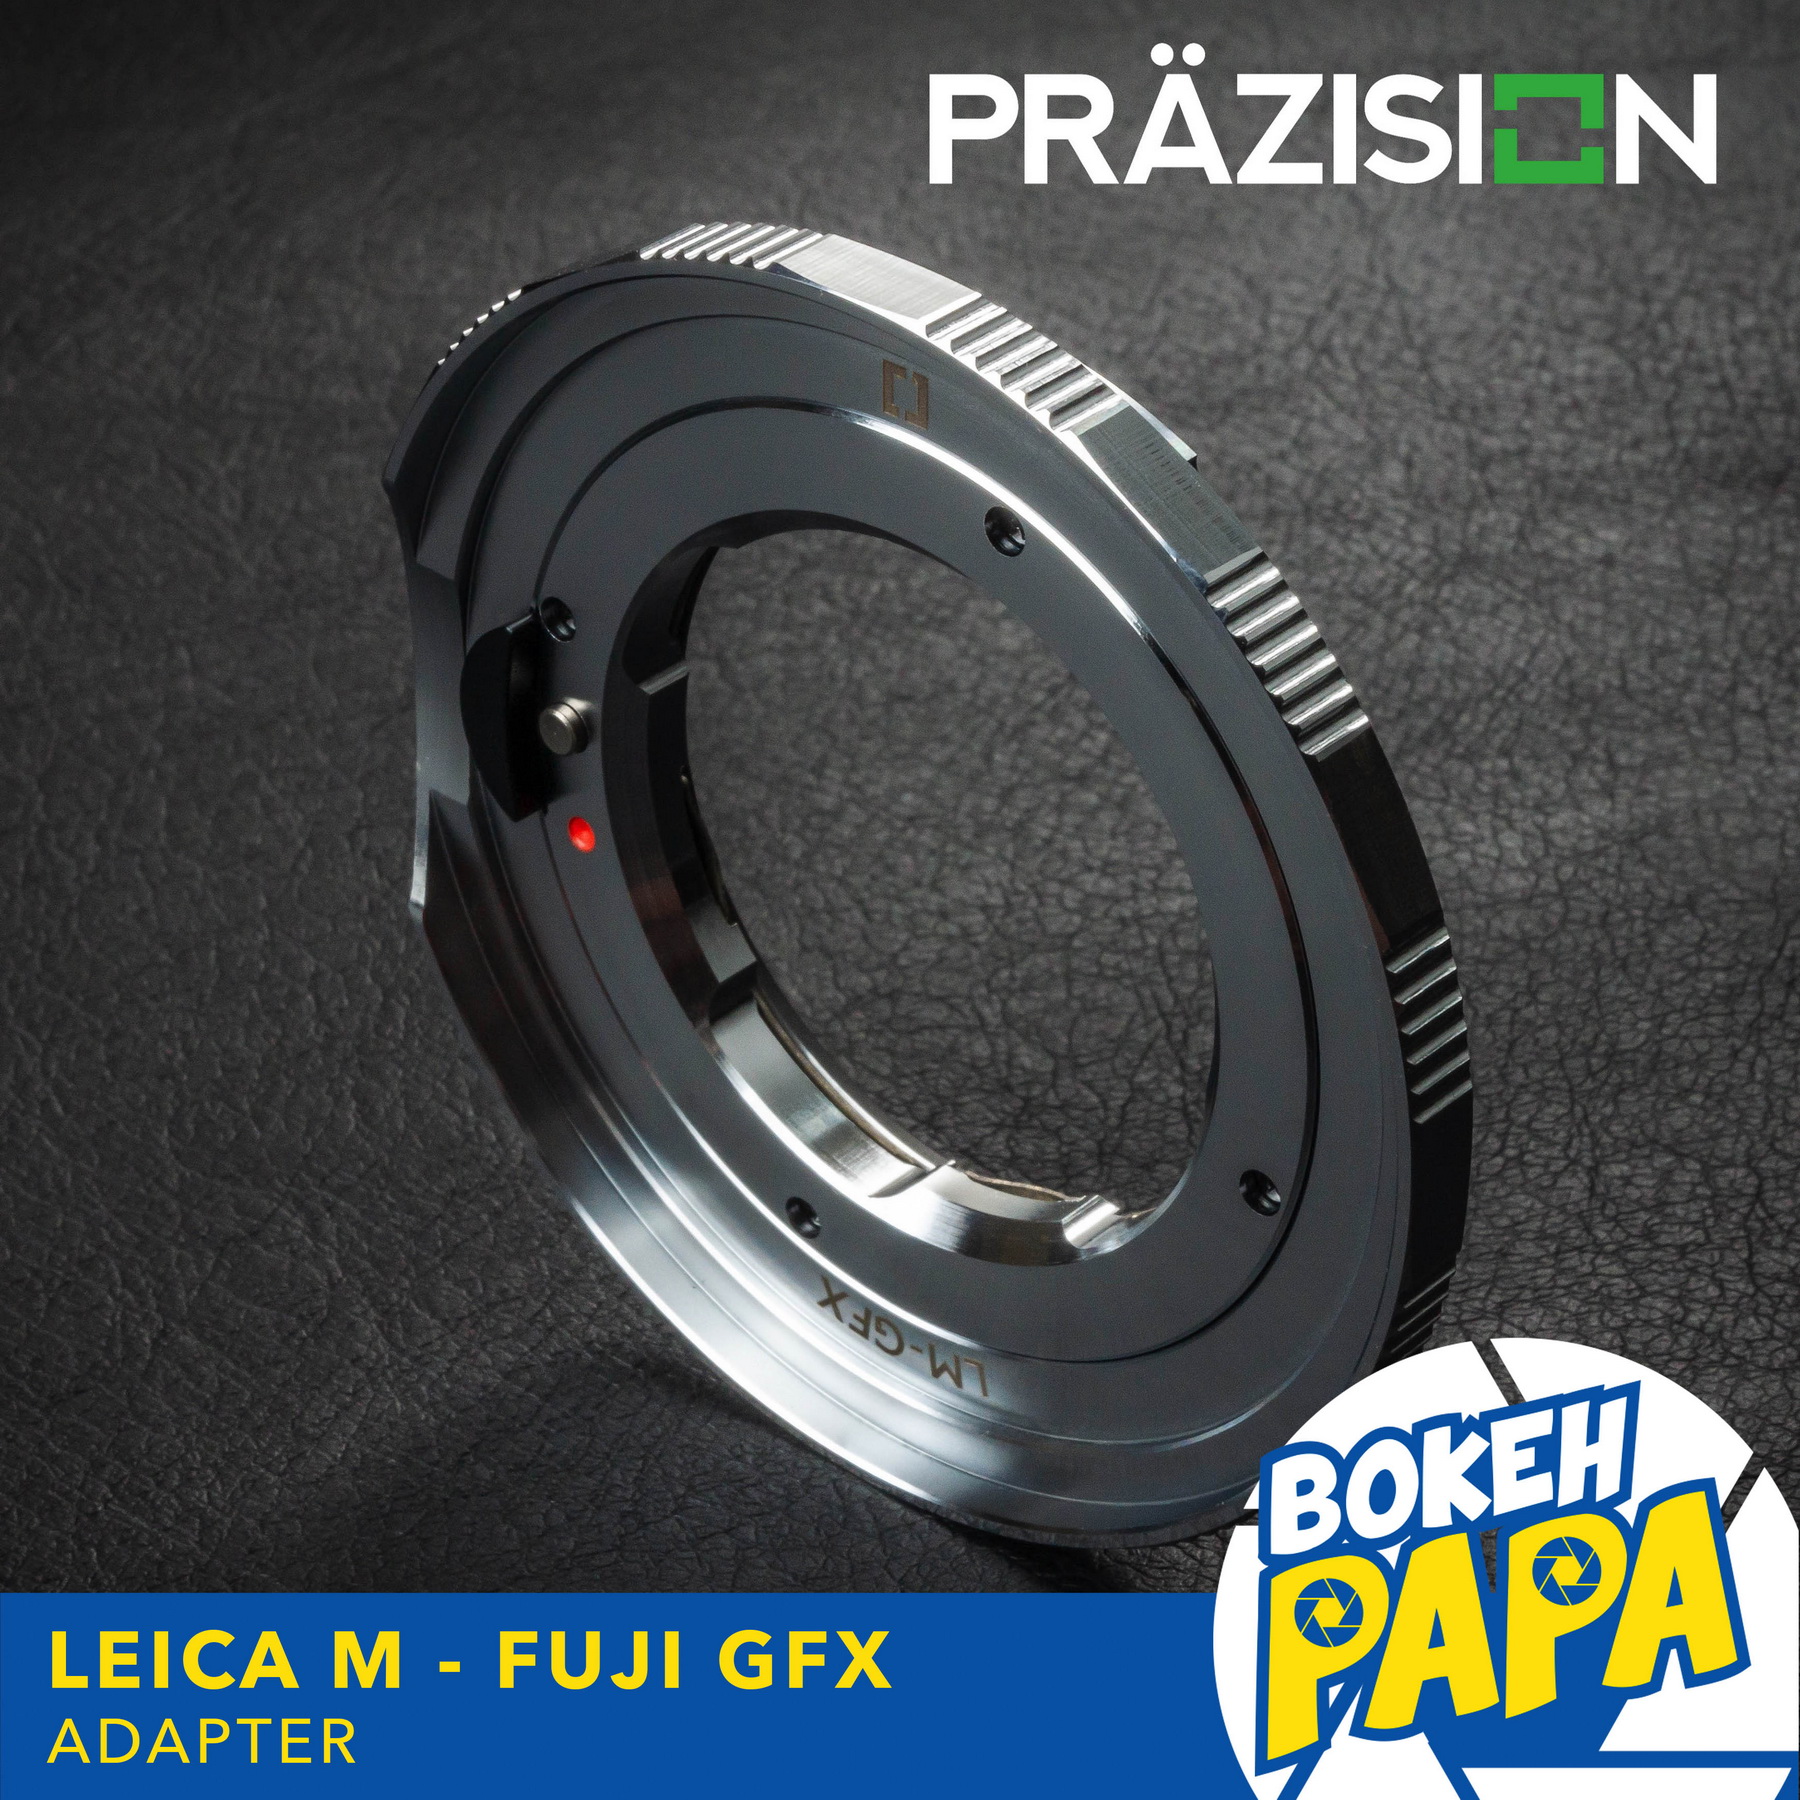 เมาท์แปลง LM-GFX ยี่ห้อ PRAZISION สำหรับแปลงเลนส์ Leica M ไปใช้กับกล้อง Fuji GFX / GFX 50R / GFX 50S / GFX-100 ( Lens mount adapter Leica M For Fuji GF X ) ( LM / GFX / 50R / 50S / GFX100 ) ( กล้อง ไลก้า - กล้อง ฟูจิ )